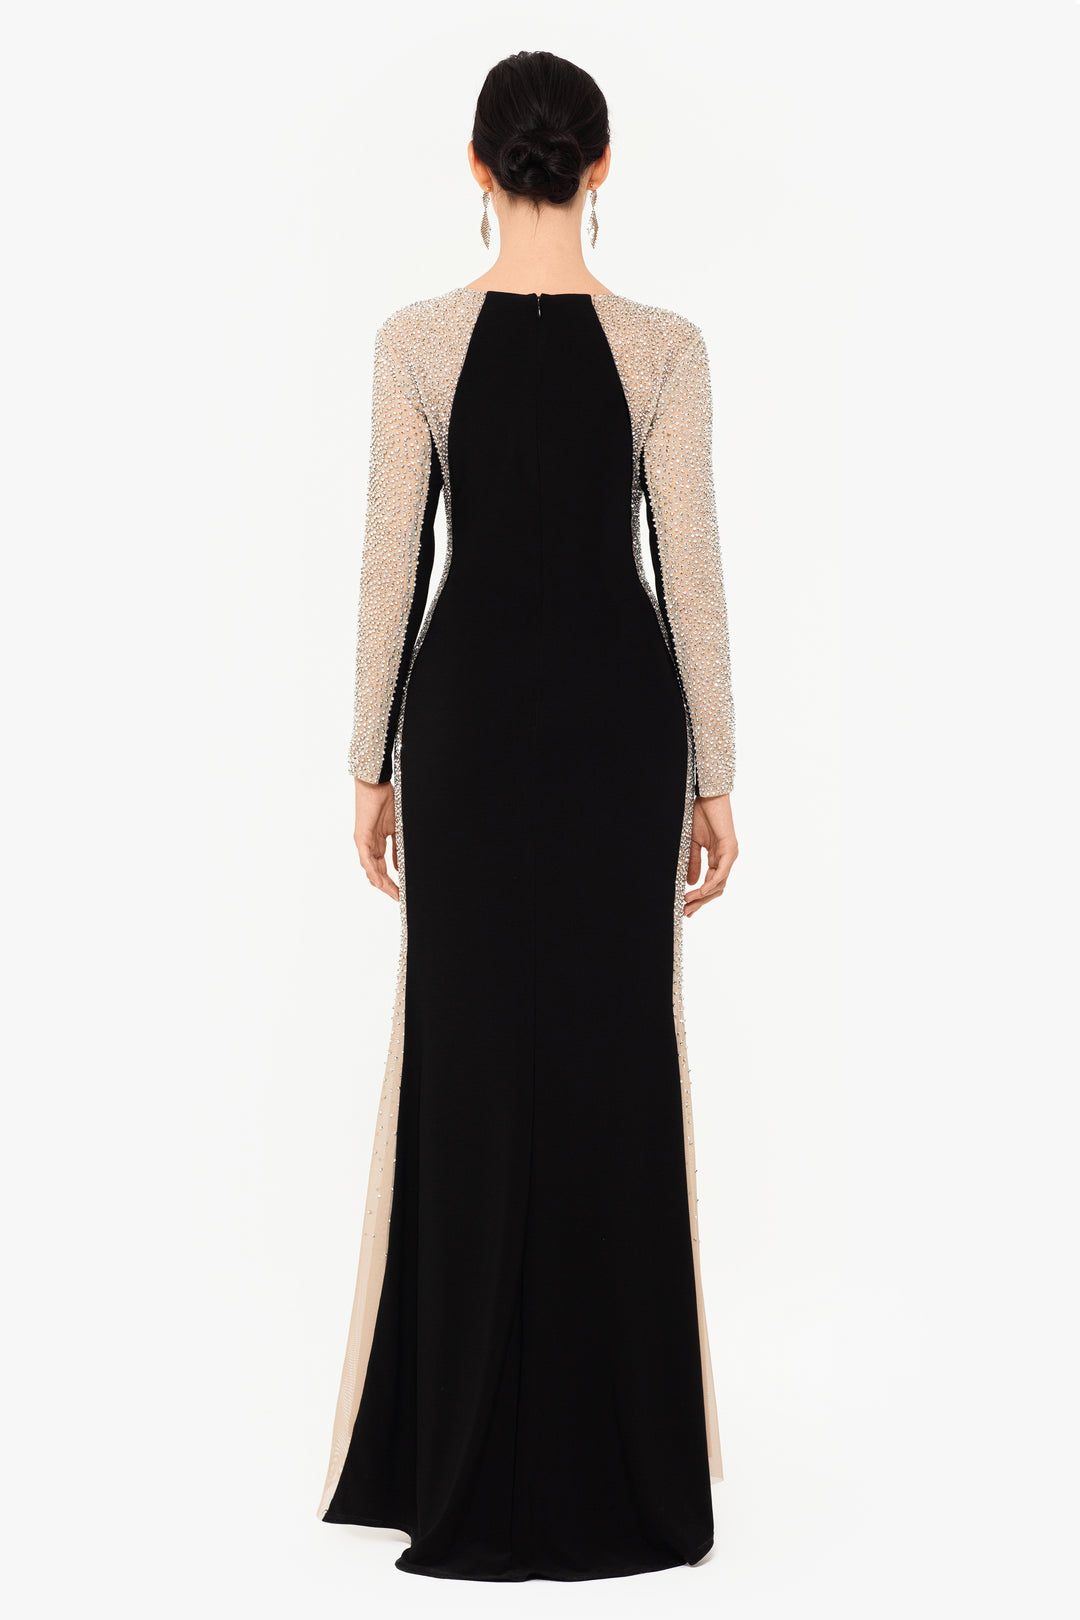 "Sarah" Long Jersey Knit with Caviar Beaded Sides Dress